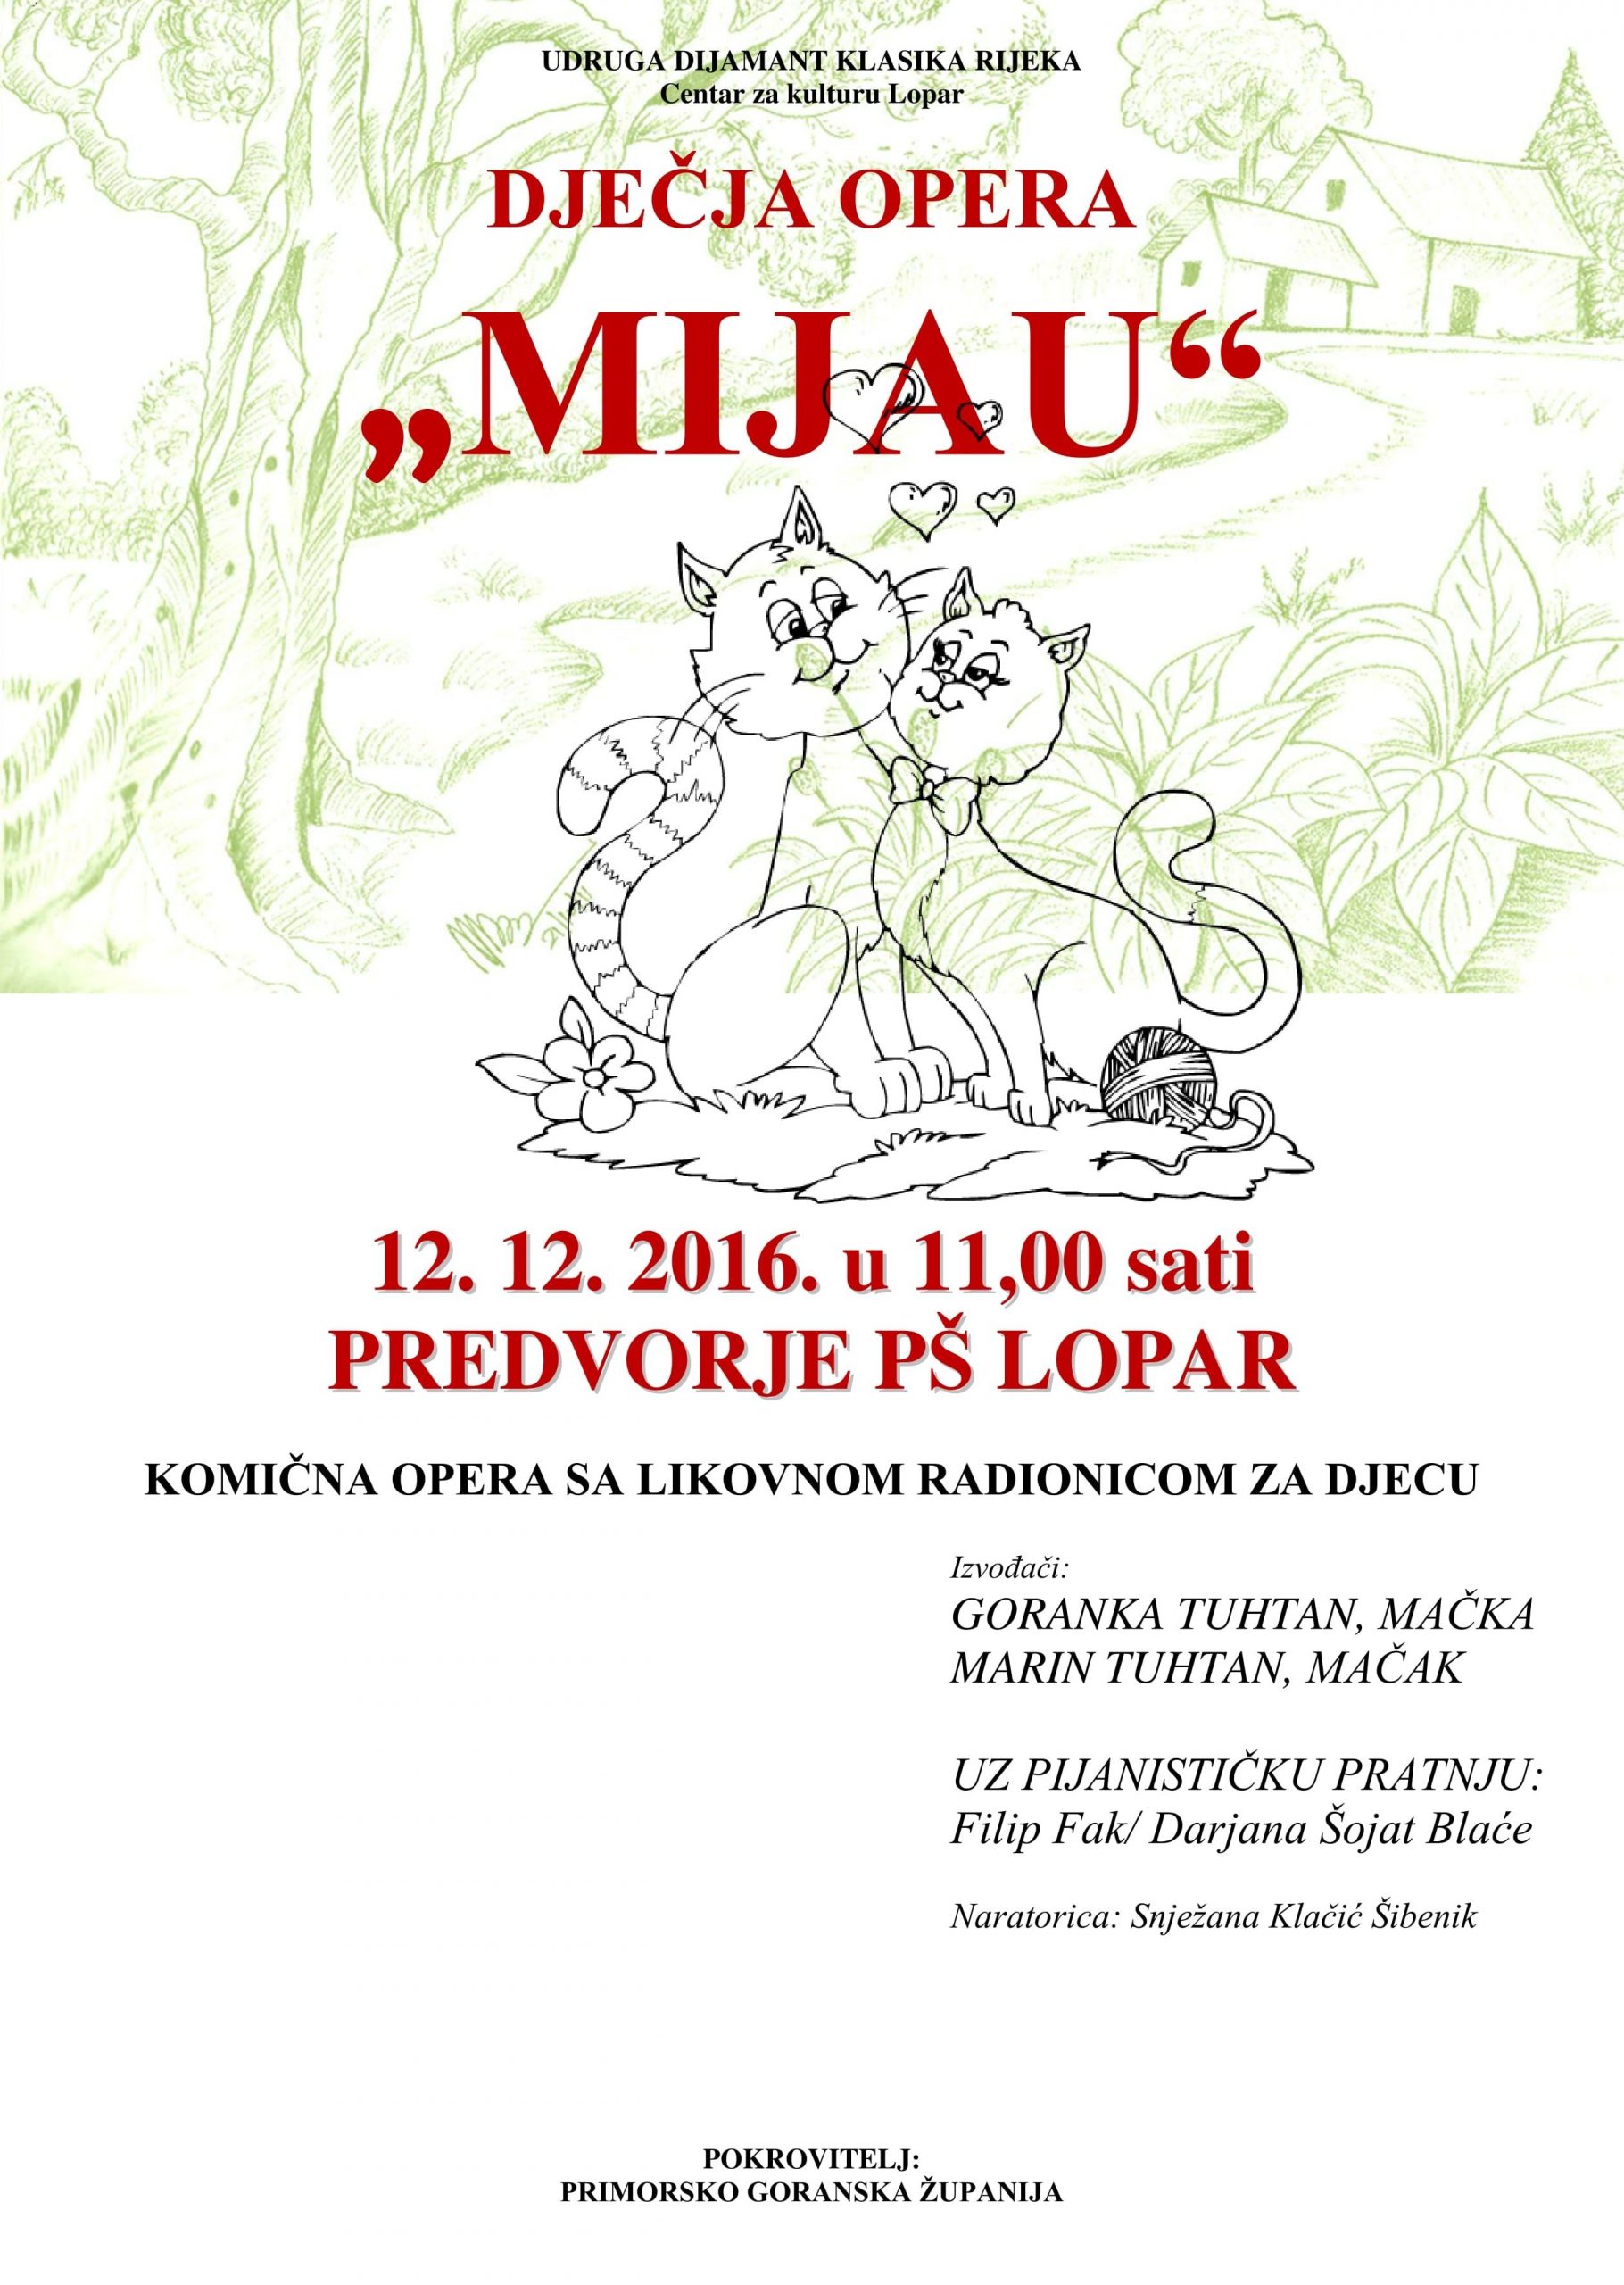 U Loparu će biti izvedena dječja opera Miju / Ponedjeljak, 12. 12. ’16. – PŠ Lopar u 11 sati